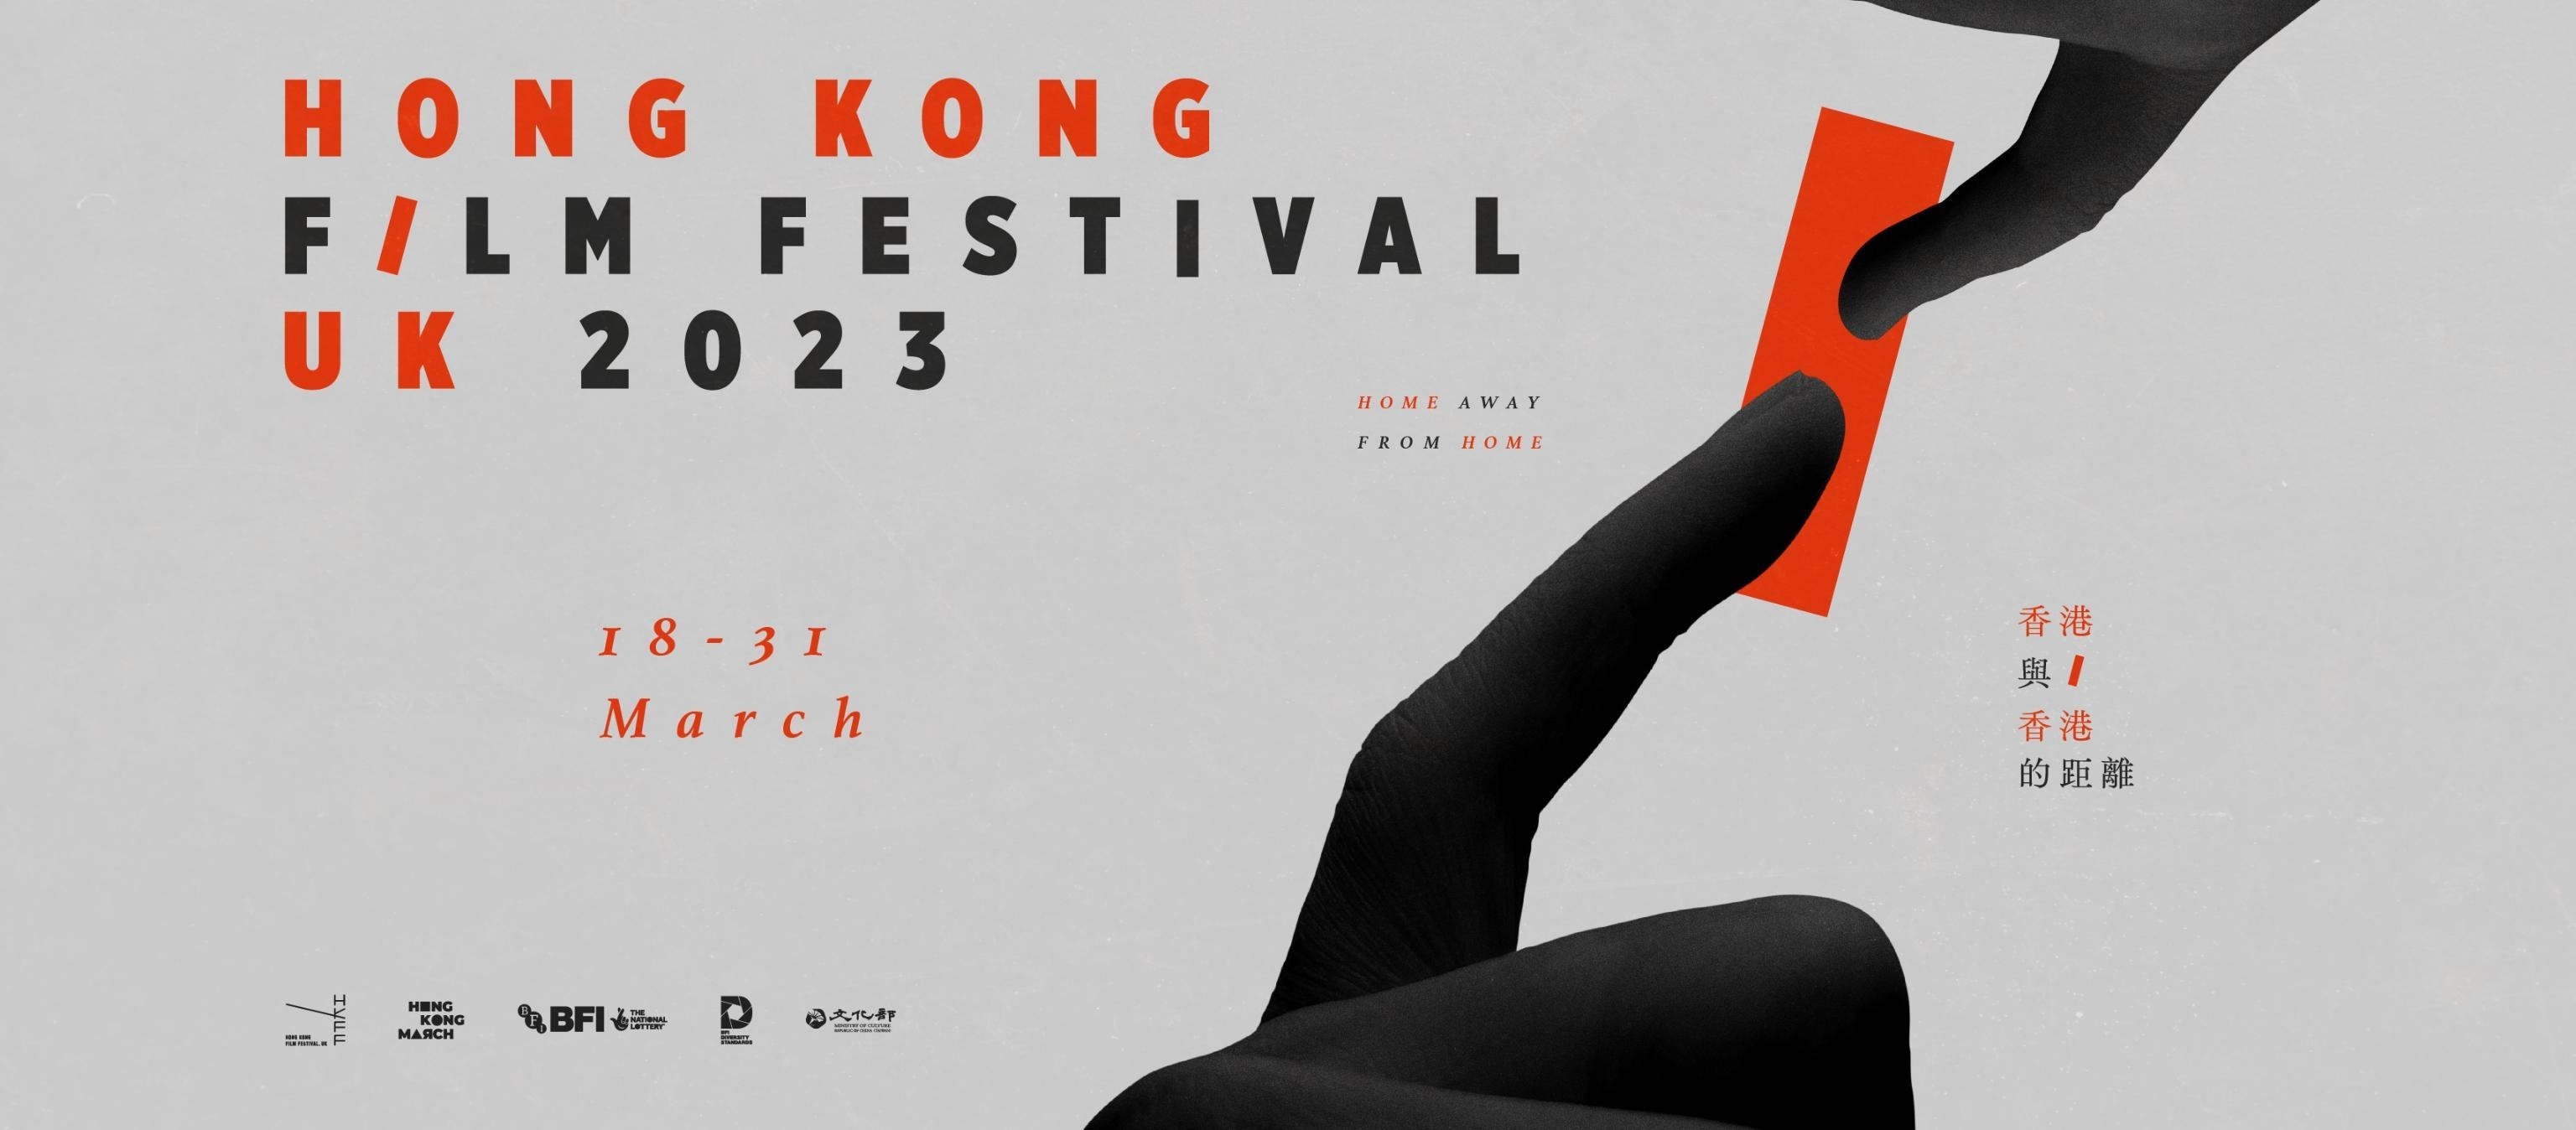 Hong Kong Film Festival UK